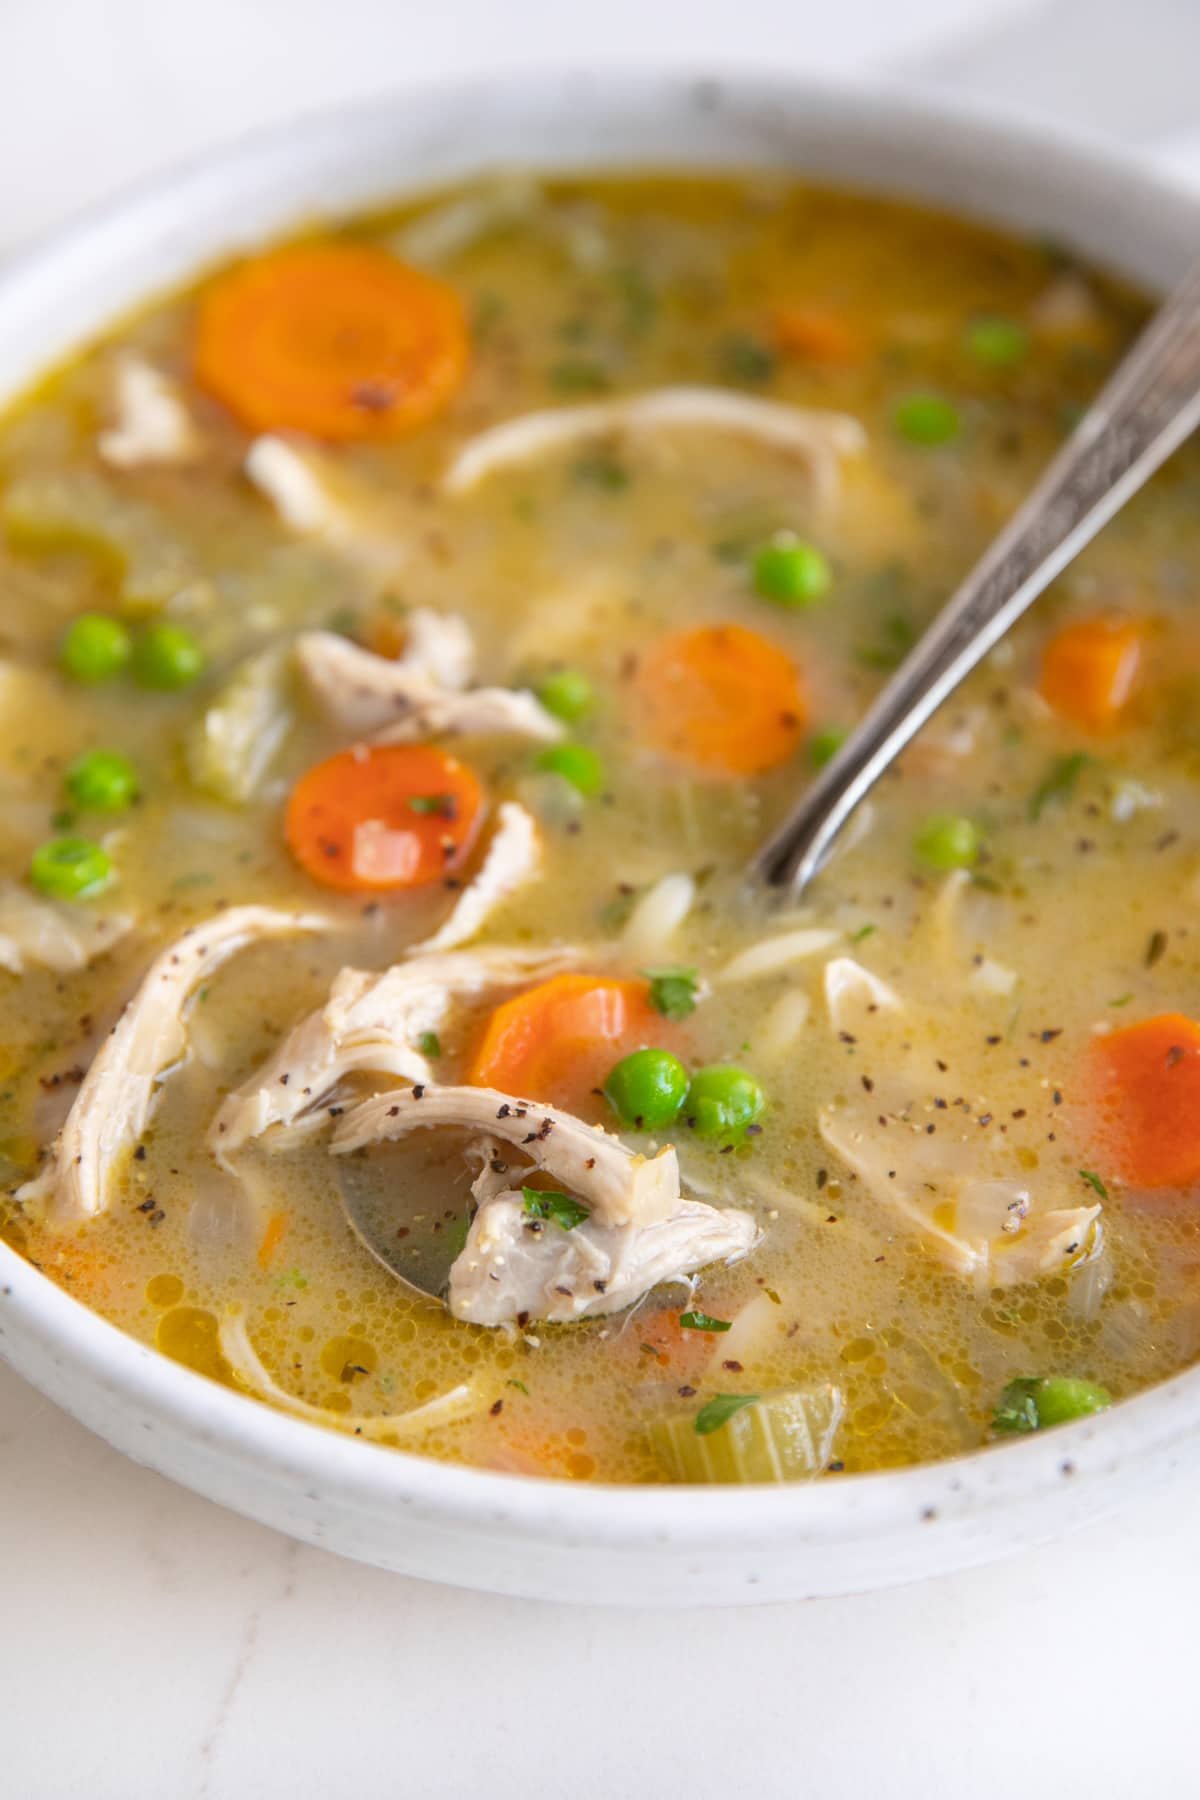 Ciotola di zuppa bianca poco profonda riempita con zuppa di orzo di pollo al limone ripiena di pollo grattugiato, carote, sedano, orzo e piselli.